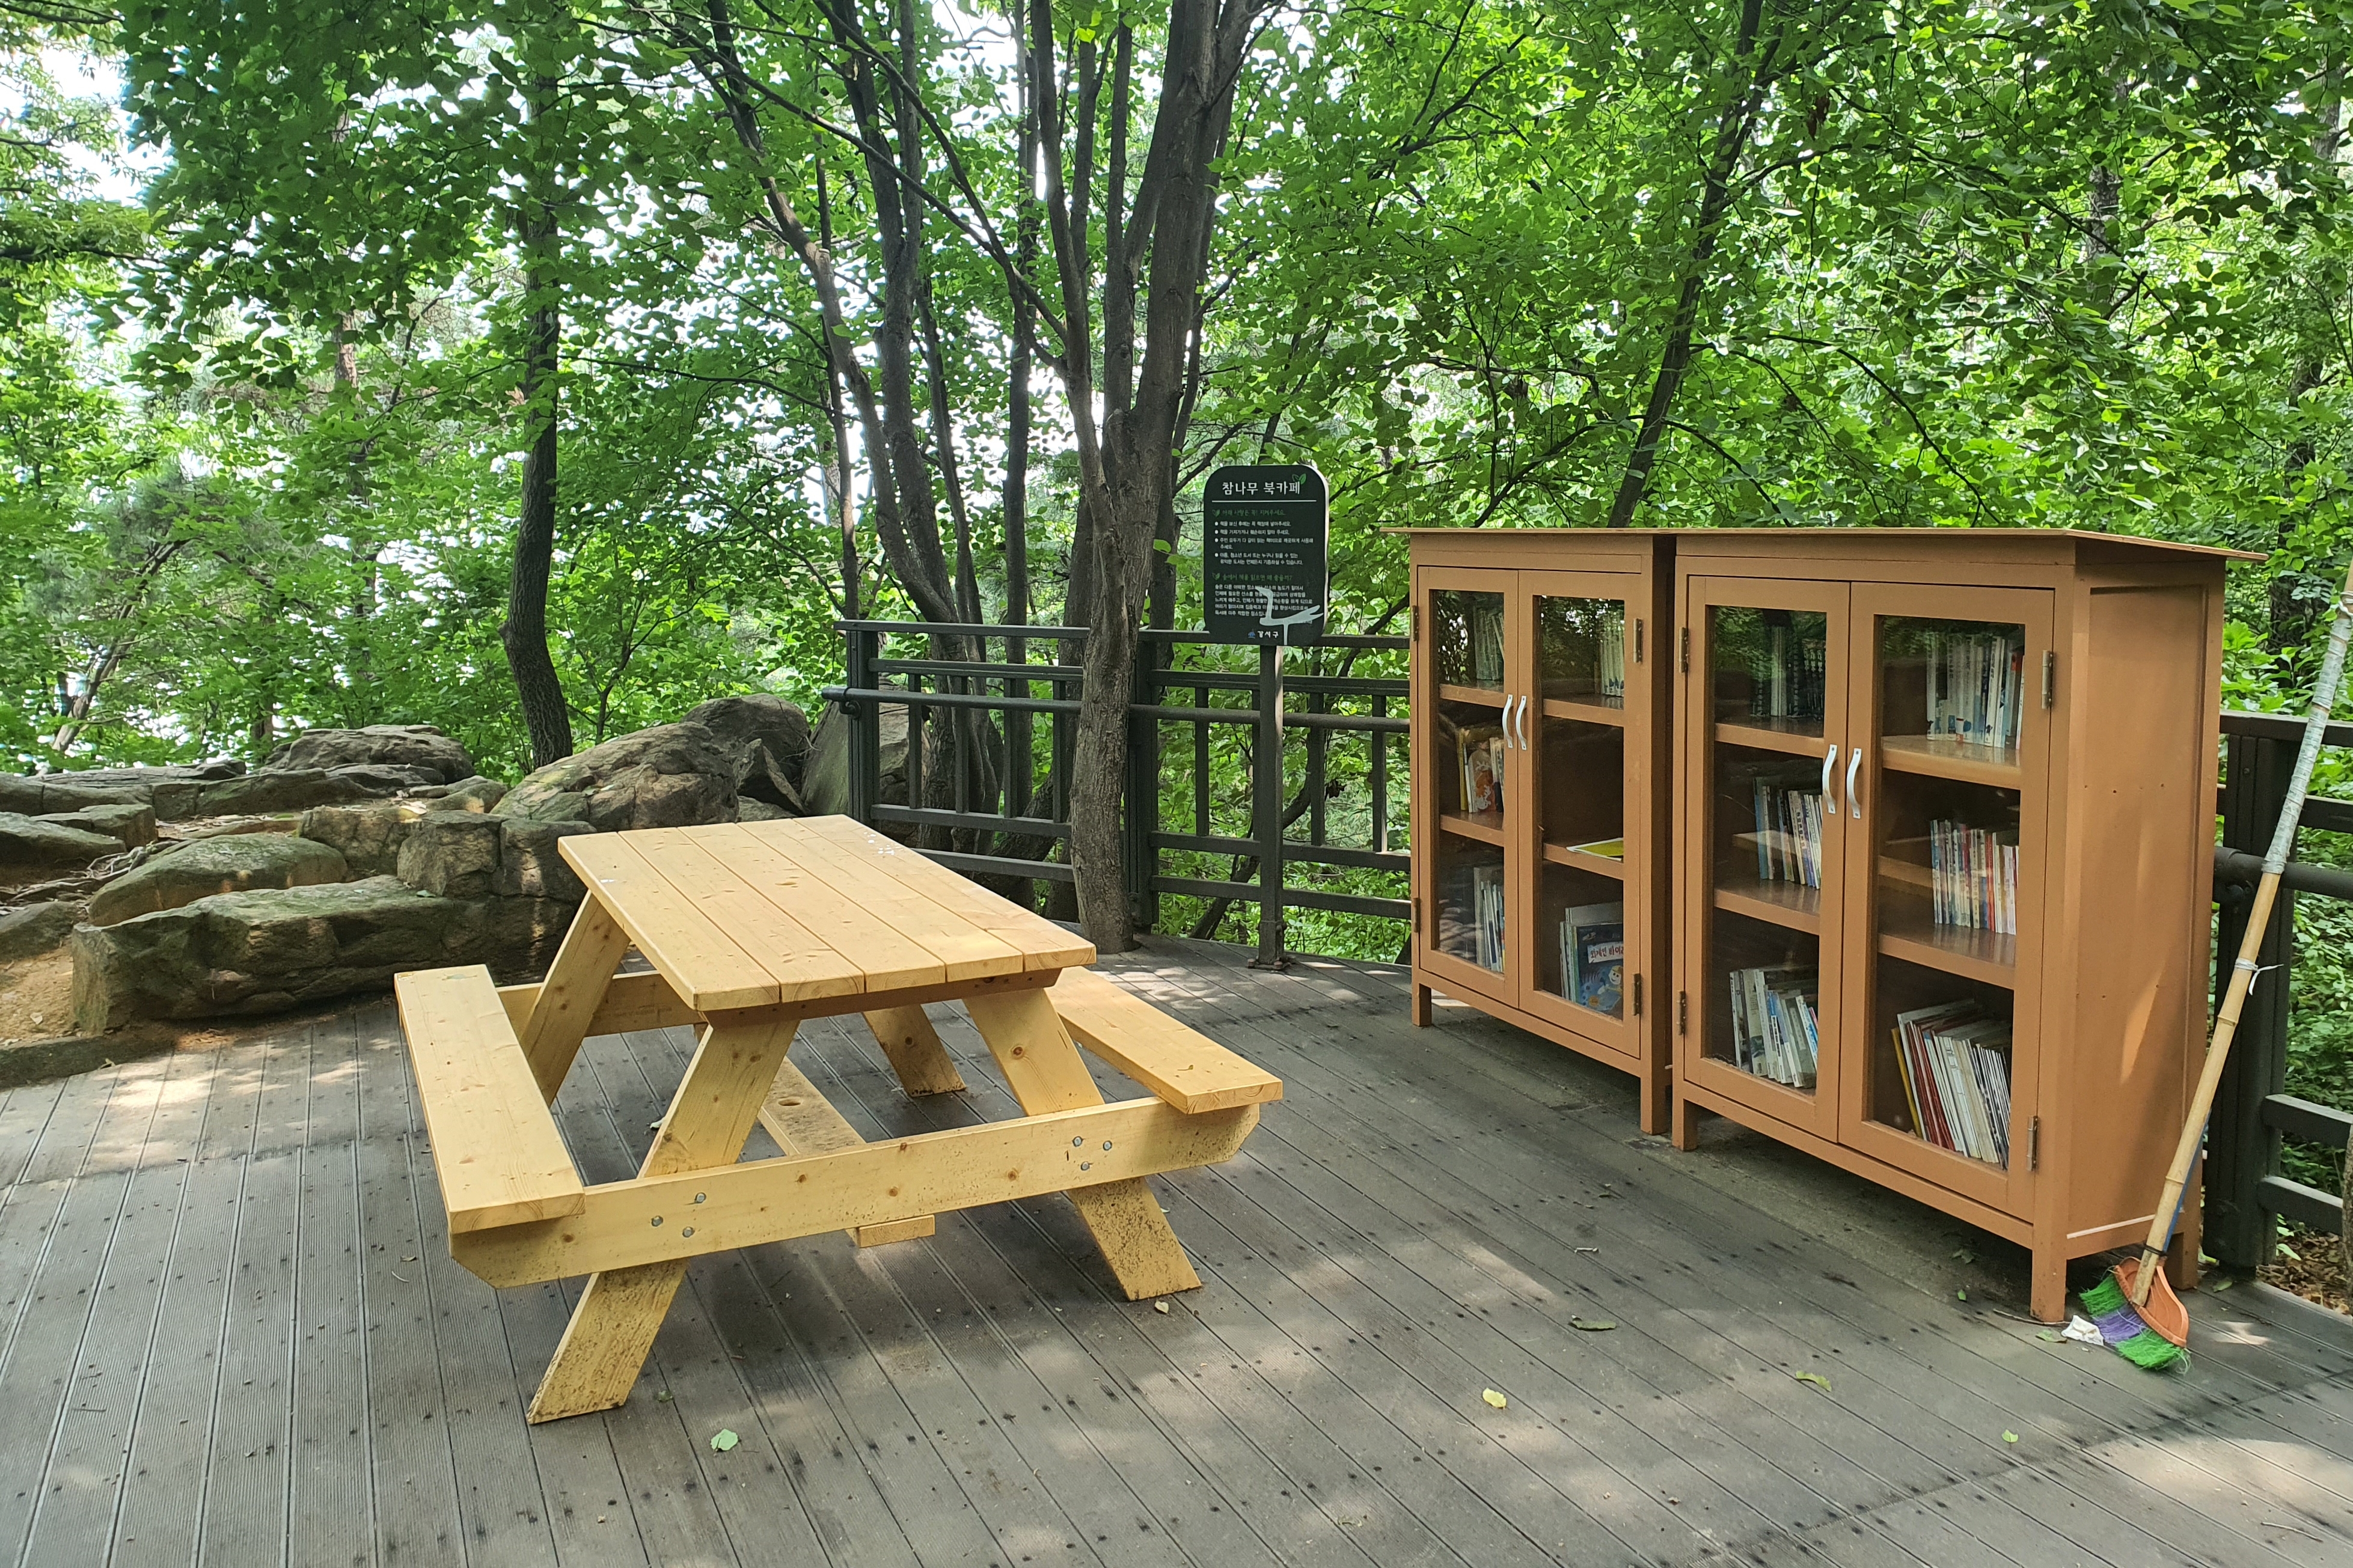 개화산 자락길(개화산 무장애 숲길)5 : 여러권의 책들과 테이블 의자가 설치되어있는 개화산자락길 북카페 전경